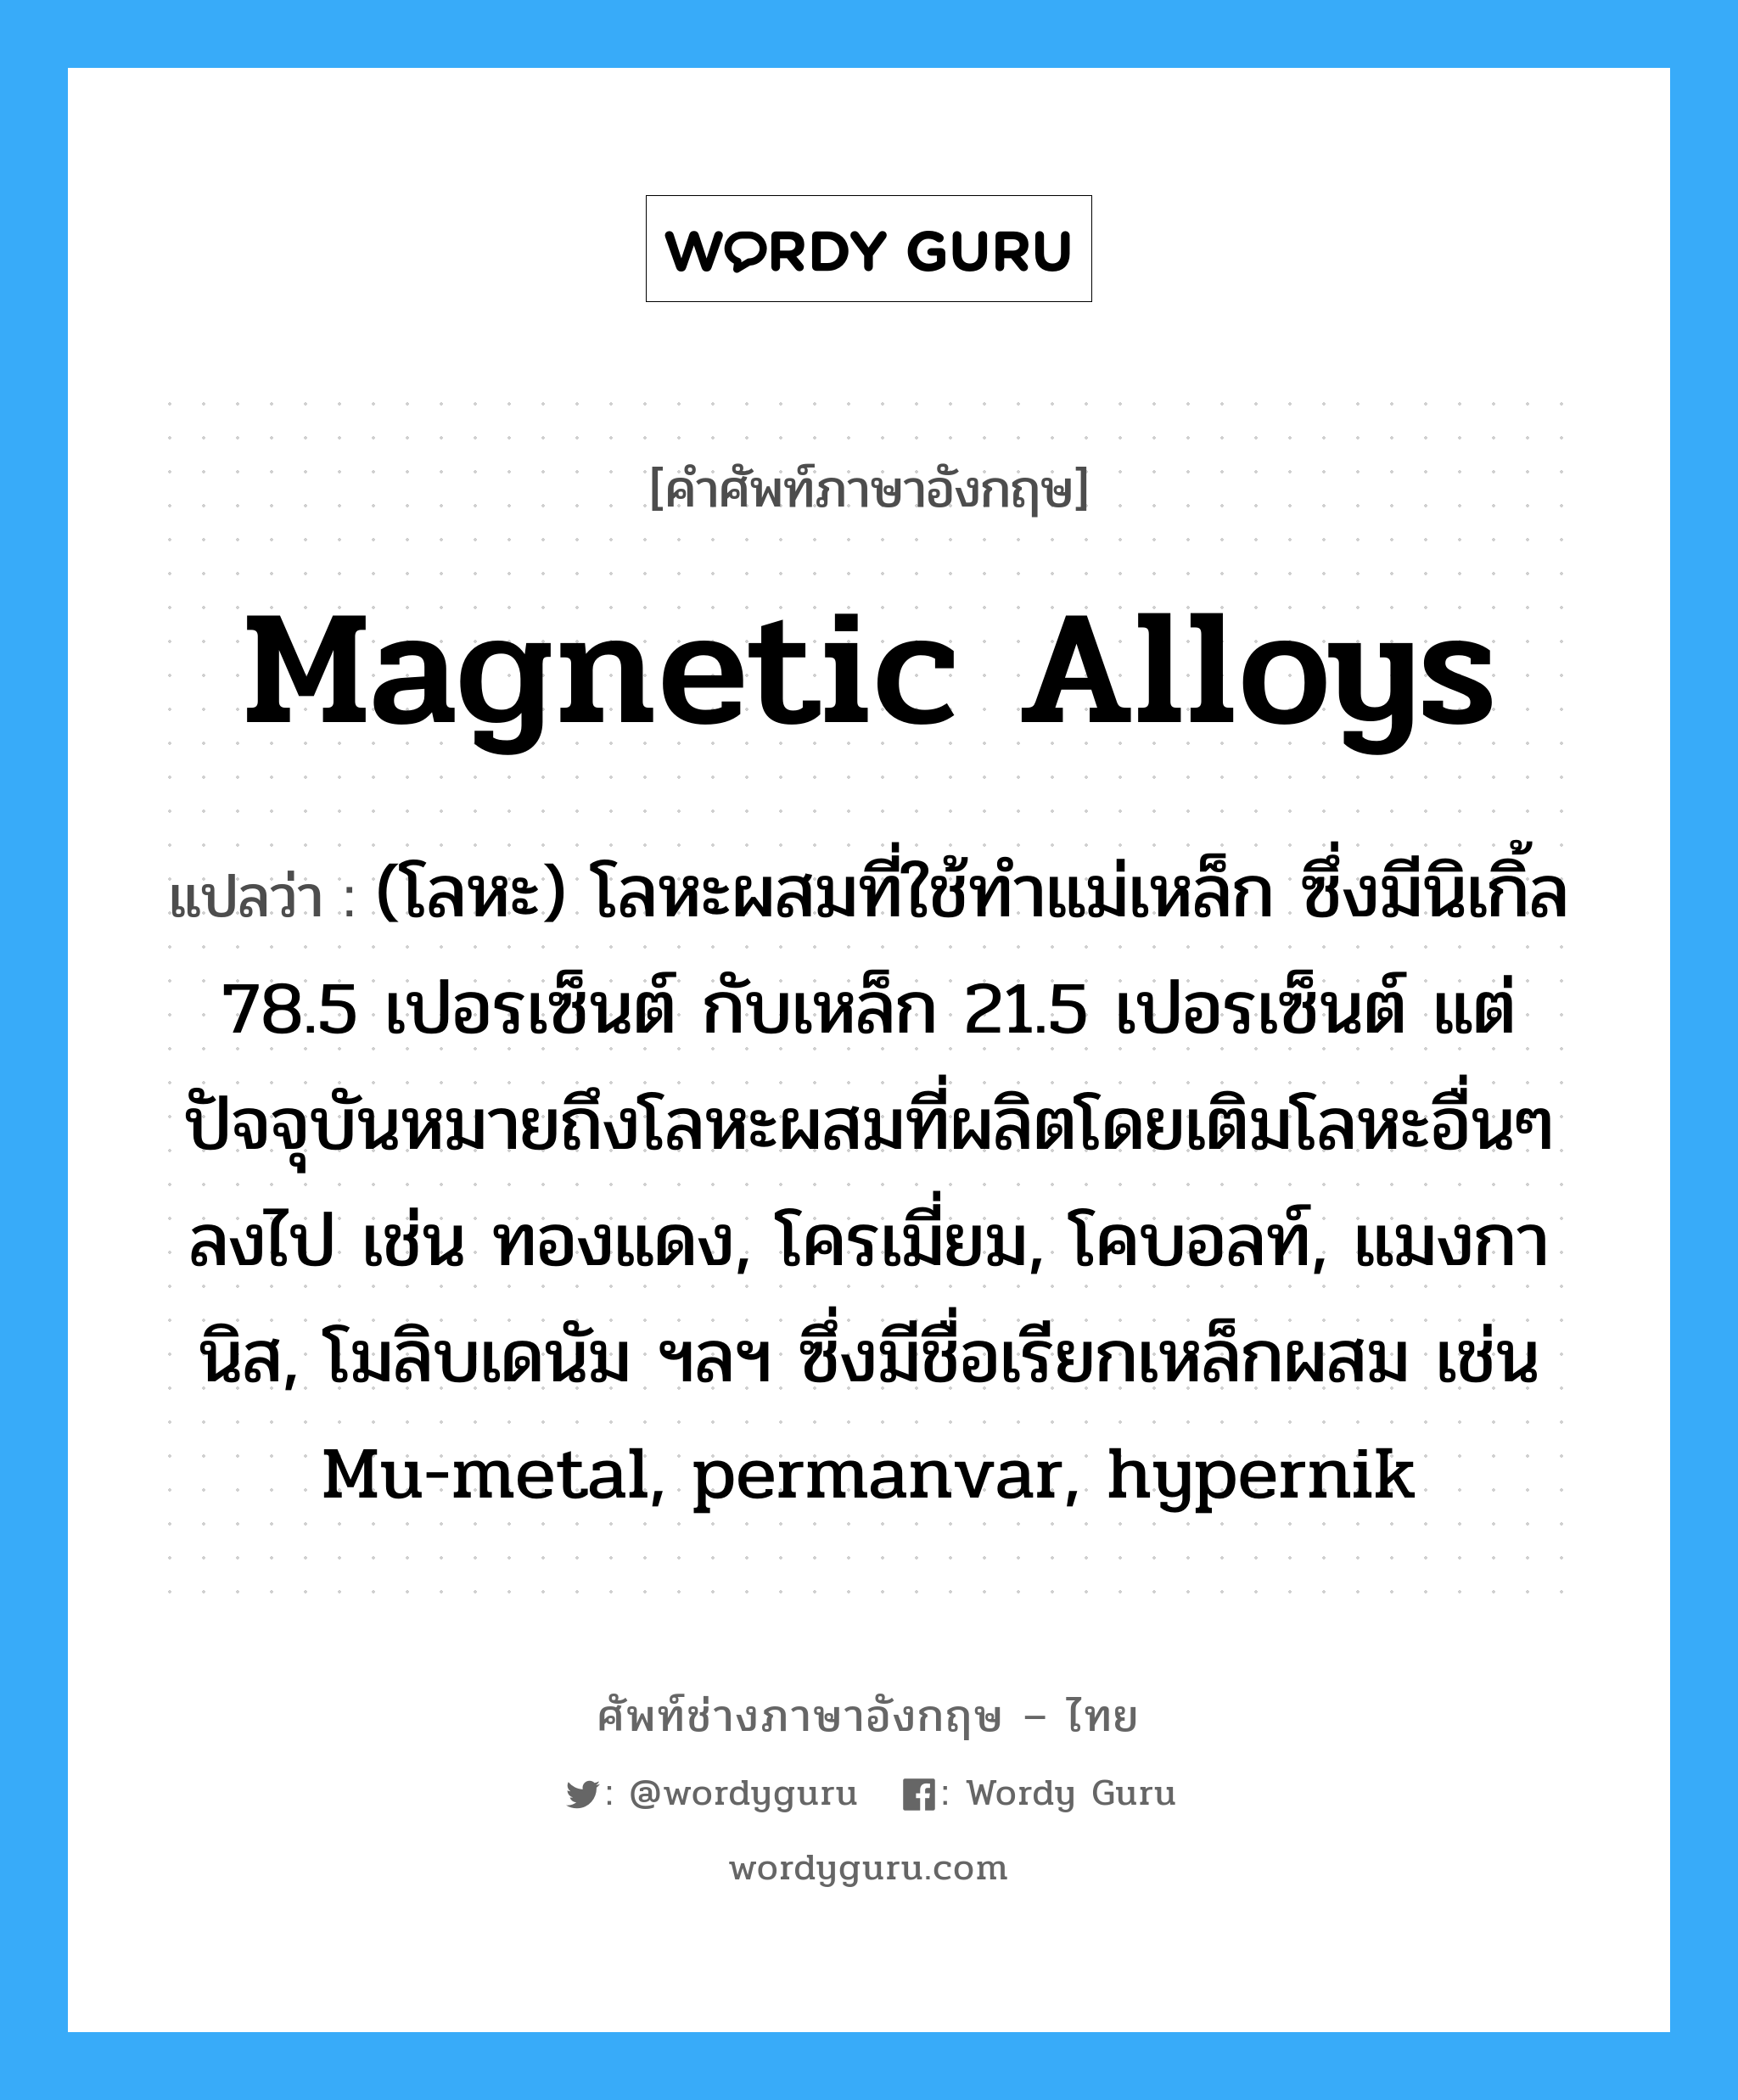 magnetic alloys แปลว่า?, คำศัพท์ช่างภาษาอังกฤษ - ไทย magnetic alloys คำศัพท์ภาษาอังกฤษ magnetic alloys แปลว่า (โลหะ) โลหะผสมที่ใช้ทำแม่เหล็ก ซึ่งมีนิเกิ้ล 78.5 เปอรเซ็นต์ กับเหล็ก 21.5 เปอรเซ็นต์ แต่ปัจจุบันหมายถึงโลหะผสมที่ผลิตโดยเติมโลหะอื่นๆลงไป เช่น ทองแดง, โครเมี่ยม, โคบอลท์, แมงกานิส, โมลิบเดนัม ฯลฯ ซึ่งมีชื่อเรียกเหล็กผสม เช่น Mu-metal, permanvar, hypernik